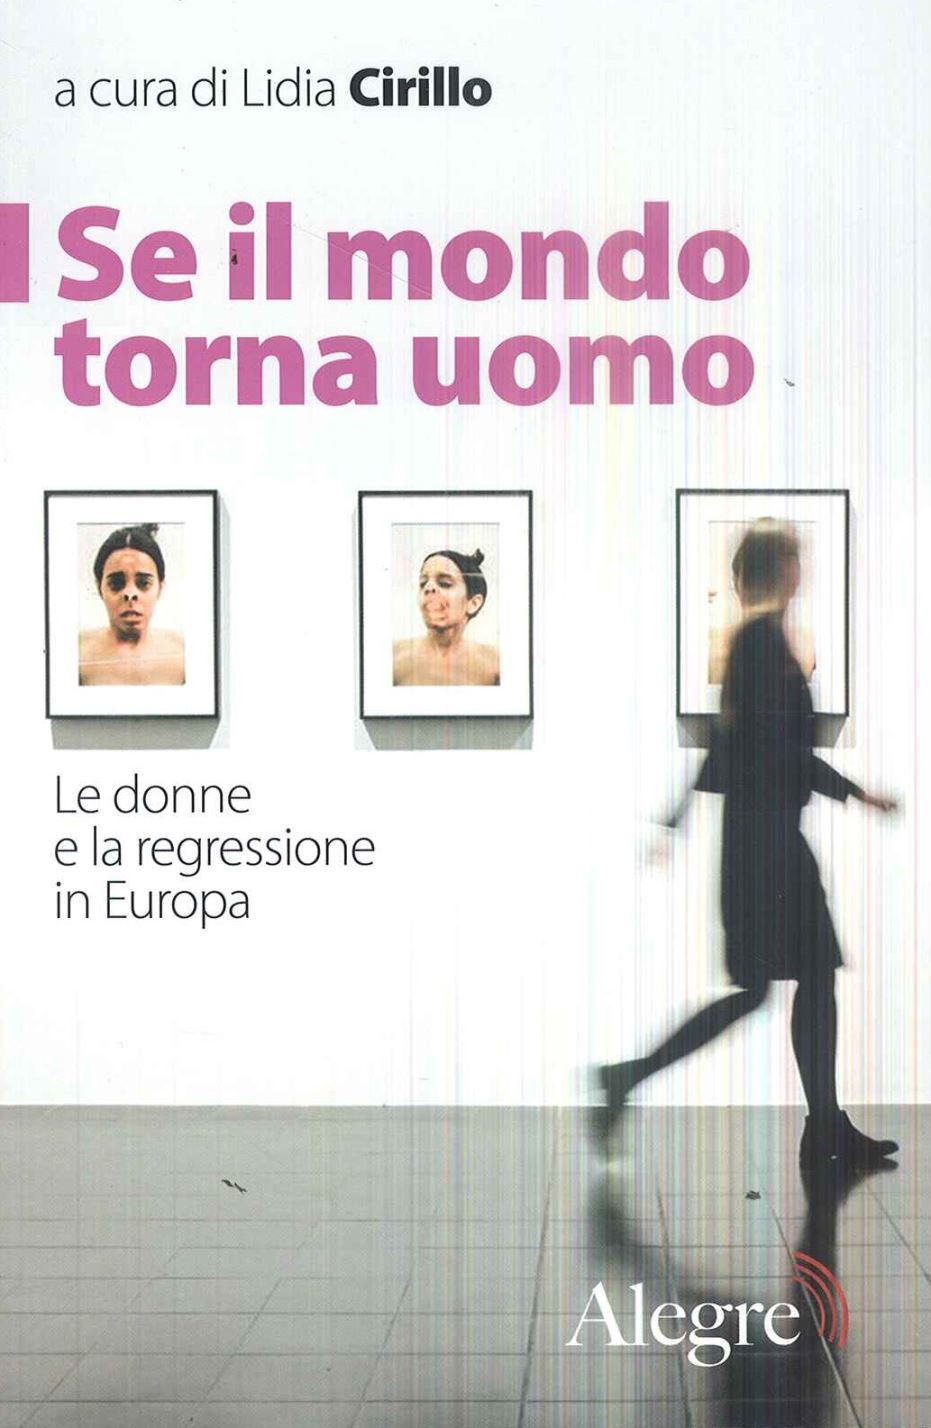 Se il mondo torna uomo. Le donne e la regressione in Europa a cura di Lidia Cirillo, Edizioni Alegre, 2018